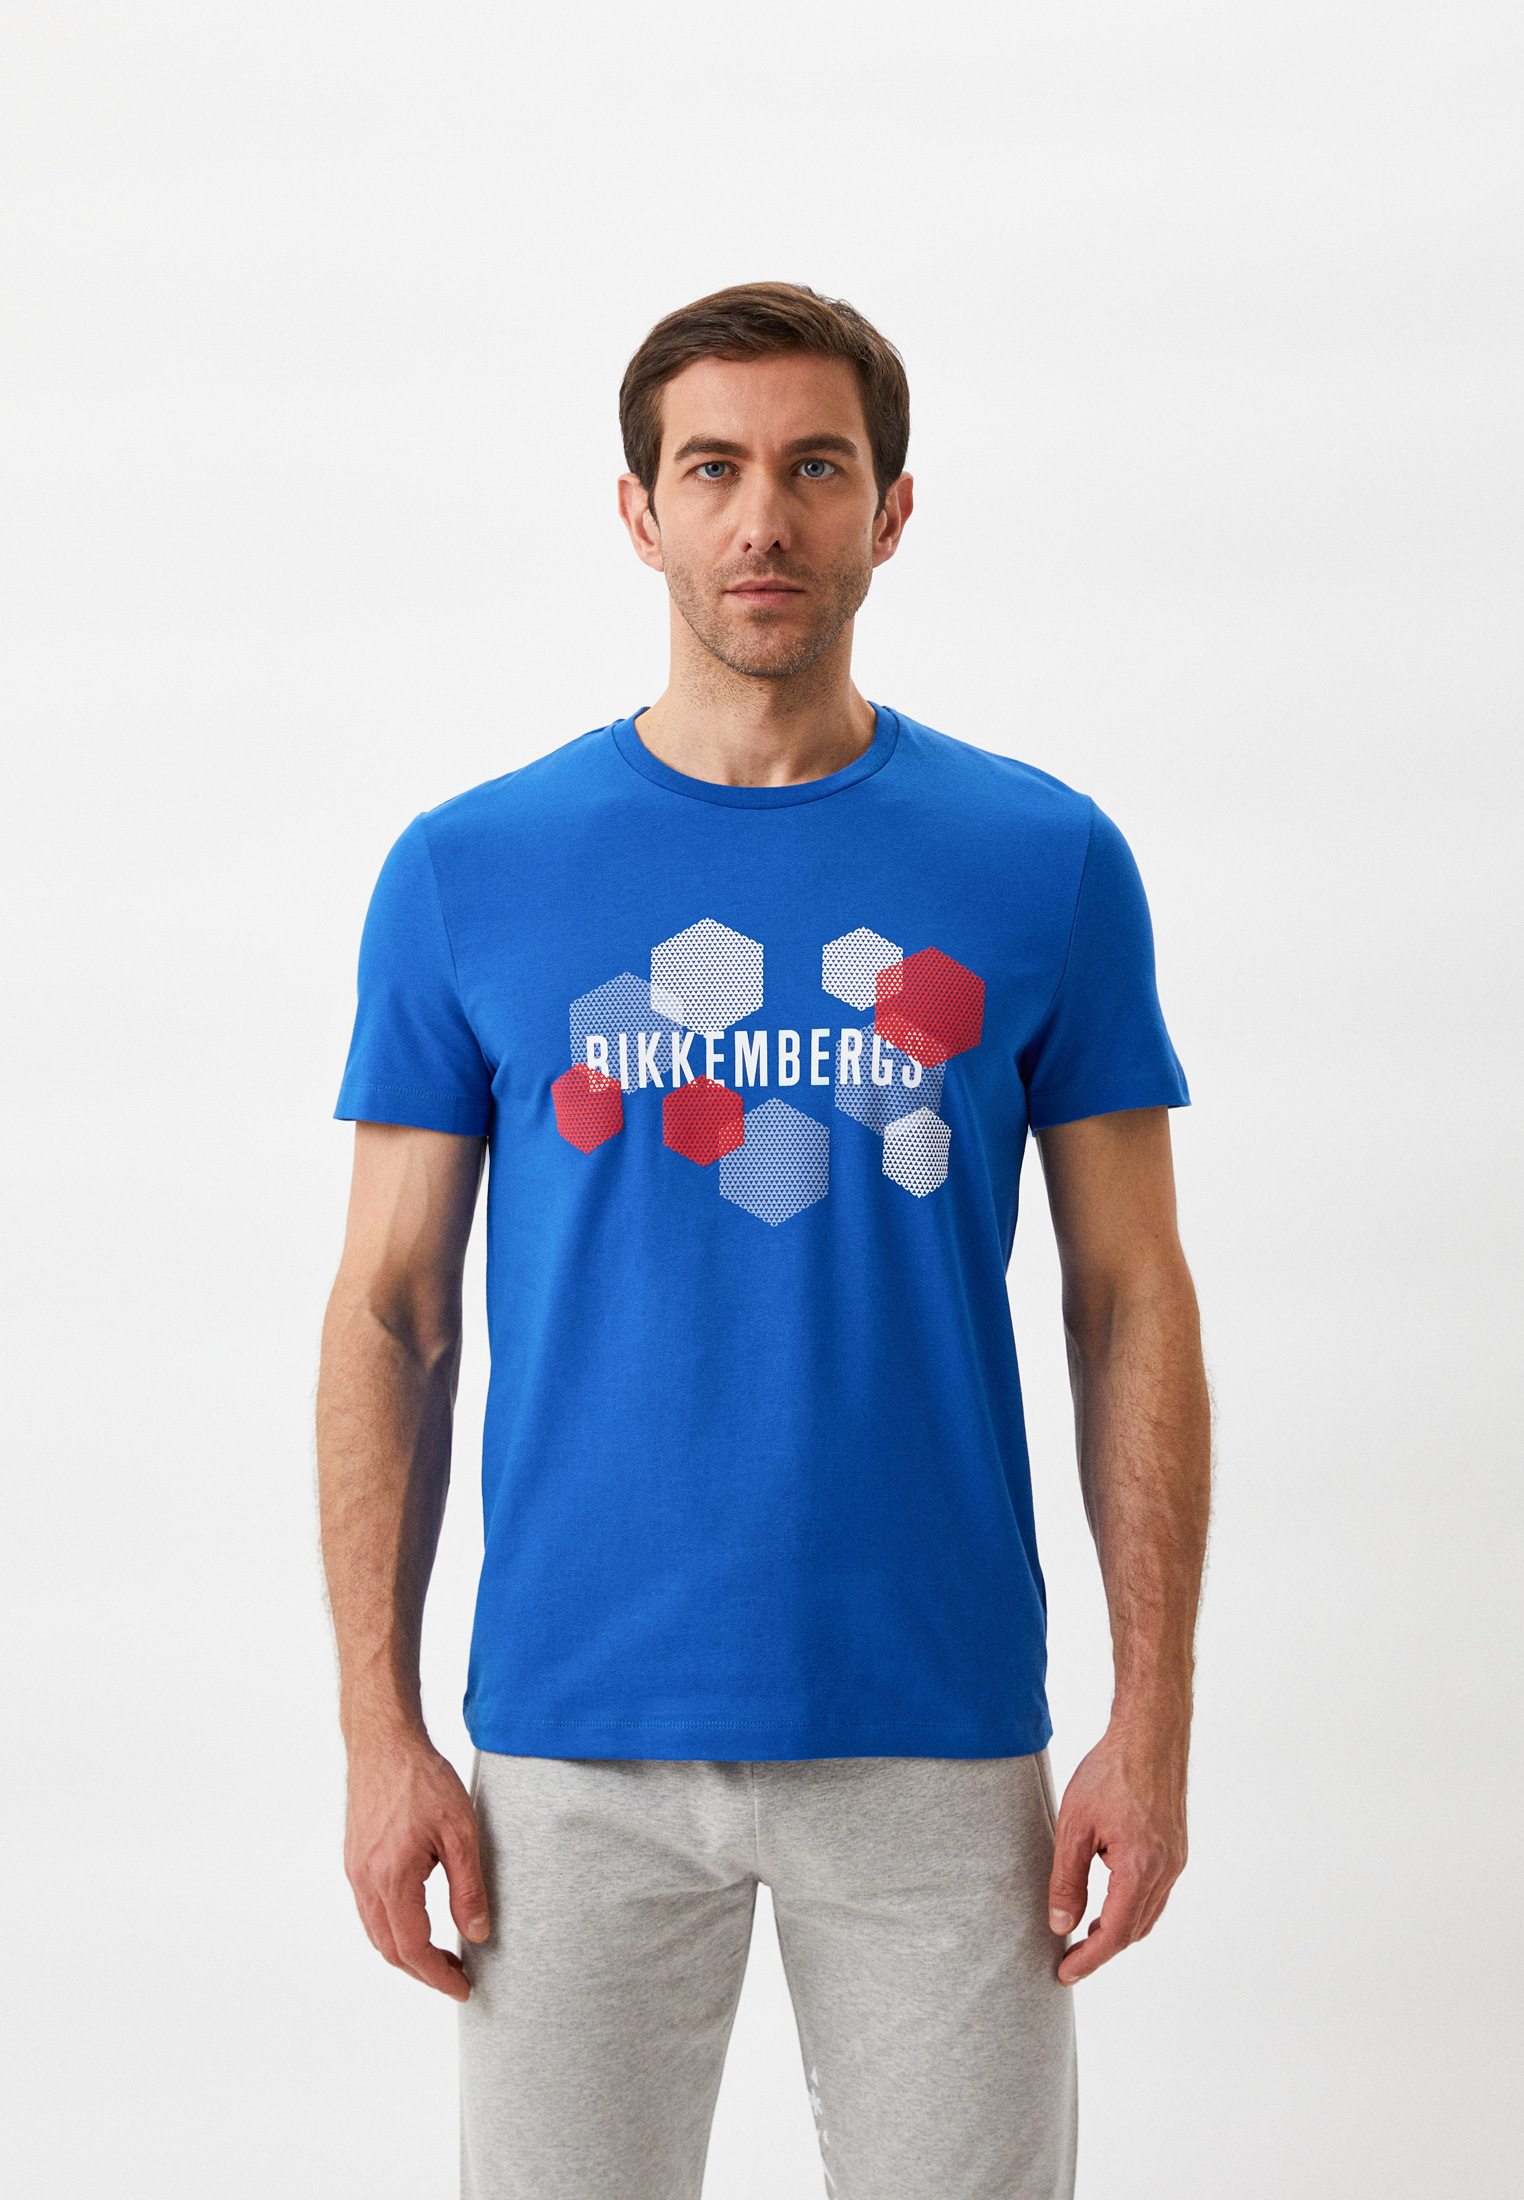 Мужская футболка Bikkembergs (Биккембергс) C 4 101 1M E 2359: изображение 1